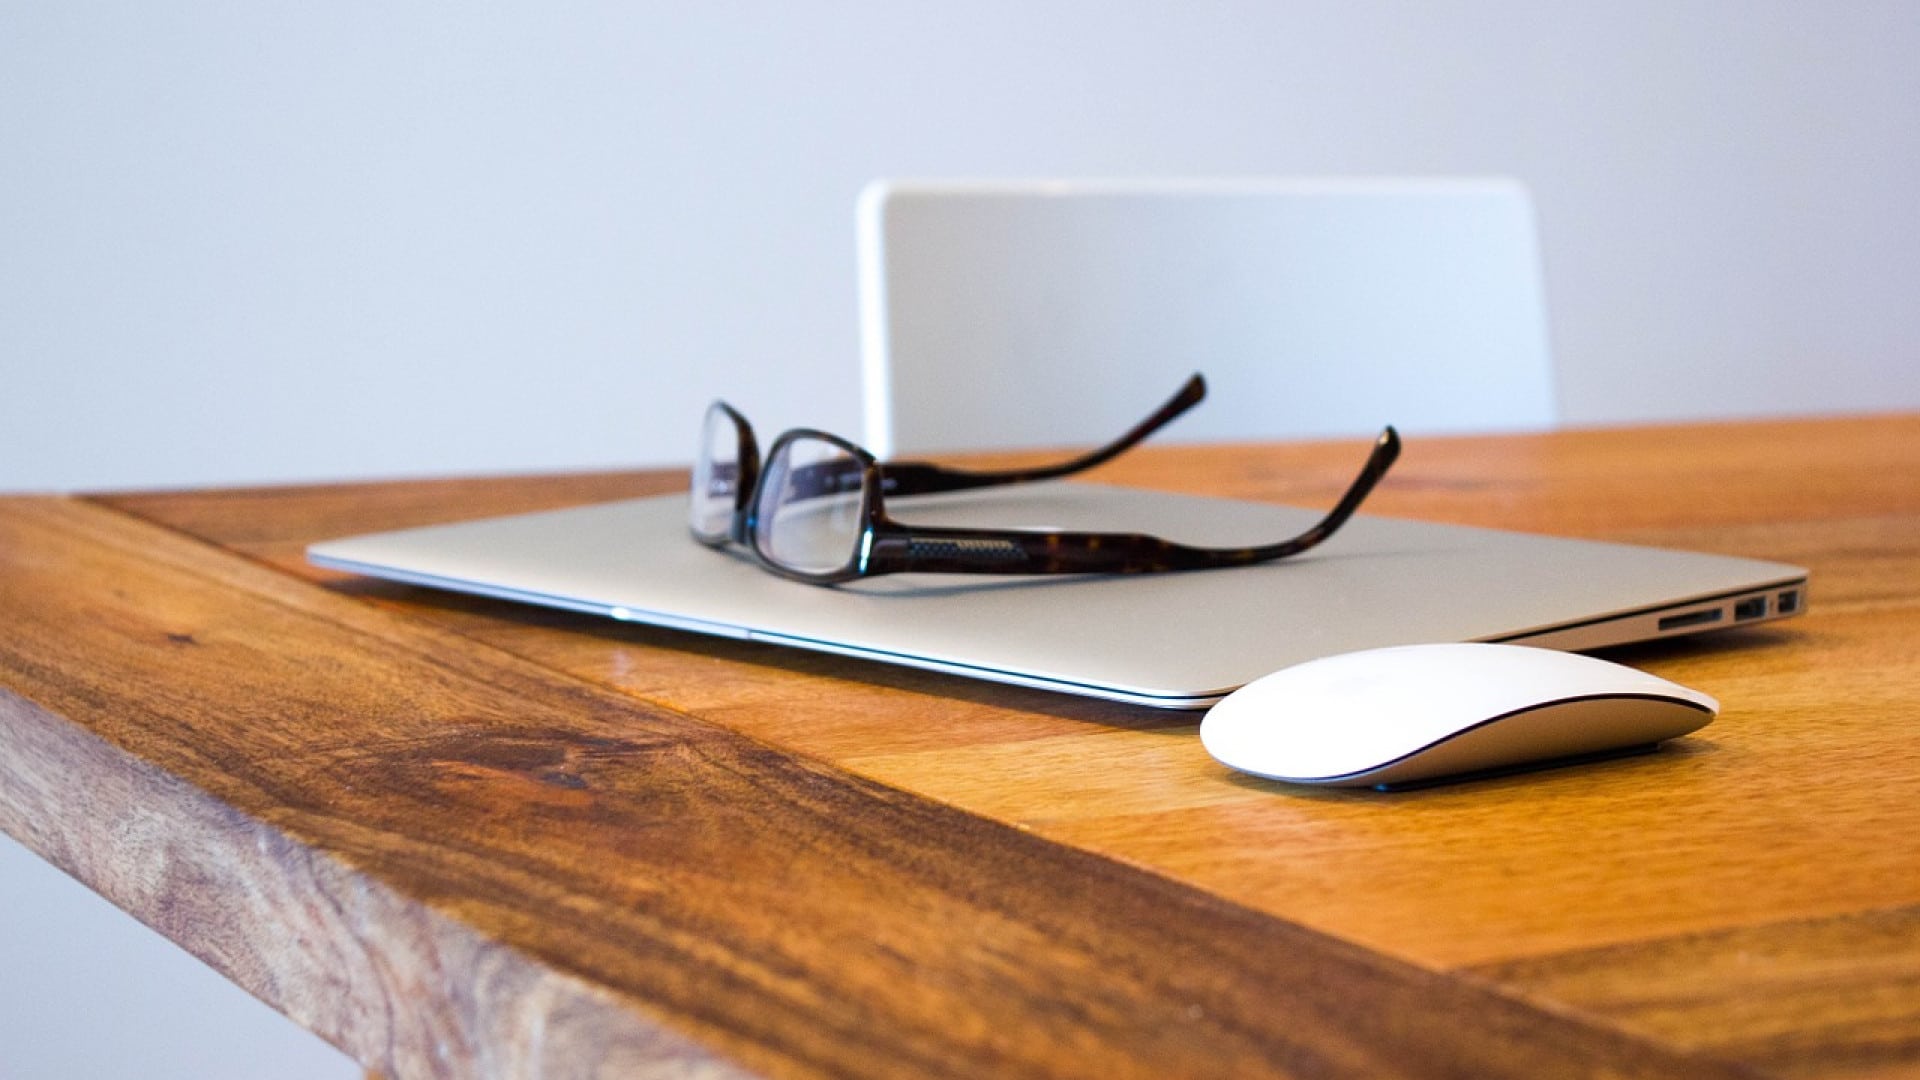 Une paire de lunettes posée sur un ordinateur portable fermé à côté d'une souris sans fil sur une table en bois.